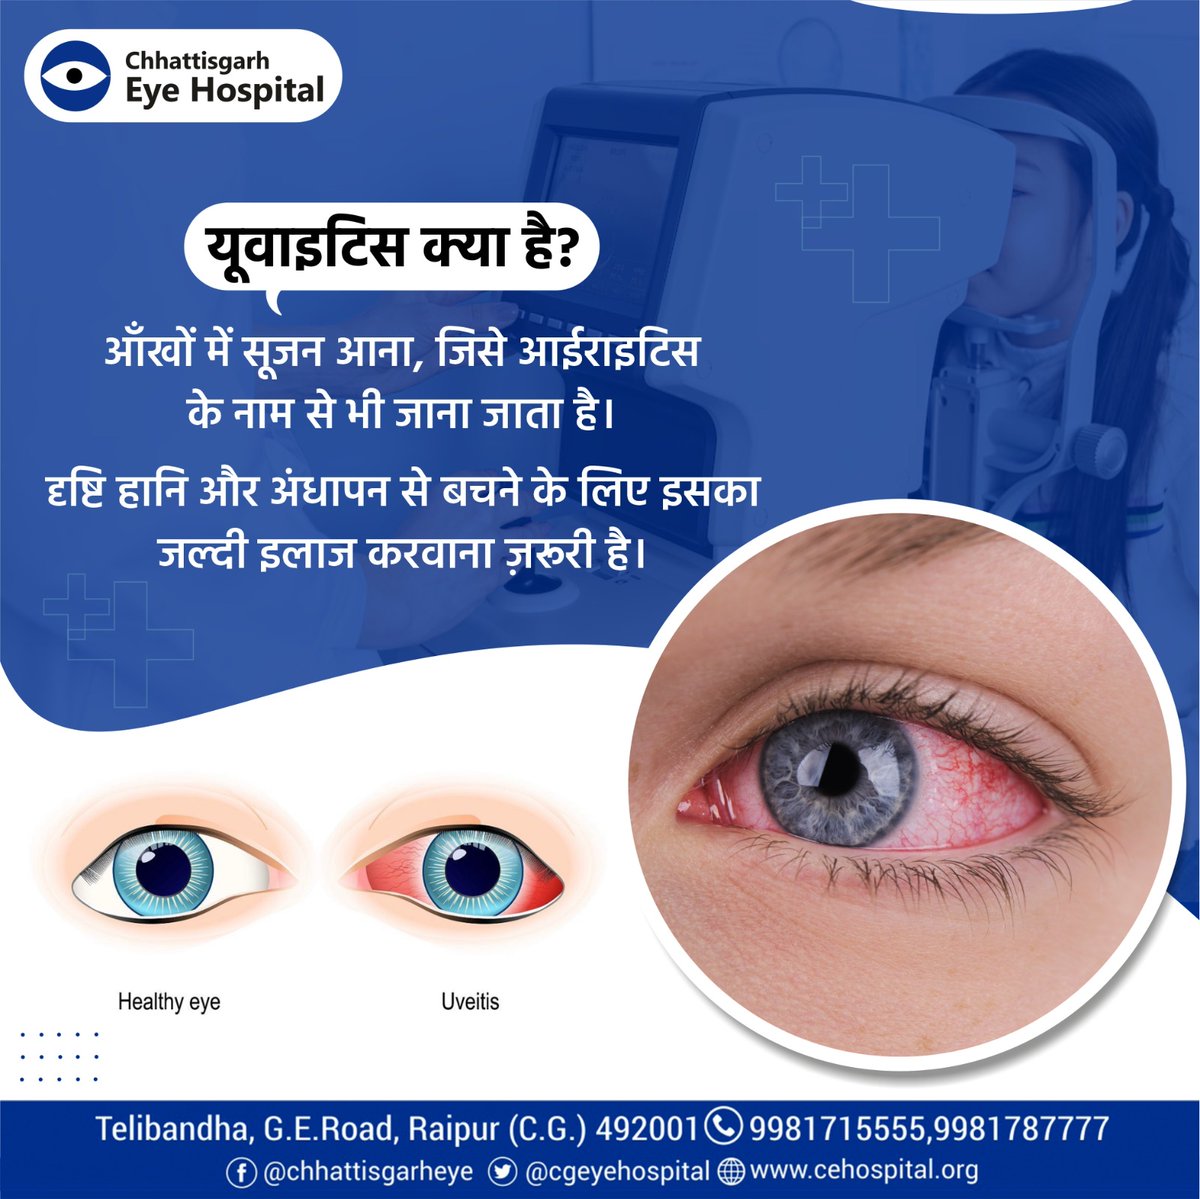 यूवाइटिस आँखों में सूजन की एक स्थिति है, जिसे आईराइटिस के नाम से भी जाना जाता है। यूवाइटिस के लक्षणों में आंखों में दर्द, धुंधली दृष्टि, प्रकाश के प्रति संवेदनशीलता और आँखों से पानी आना शामिल हो सकते हैं। 
#eyecare #eyehospital #eyedisease